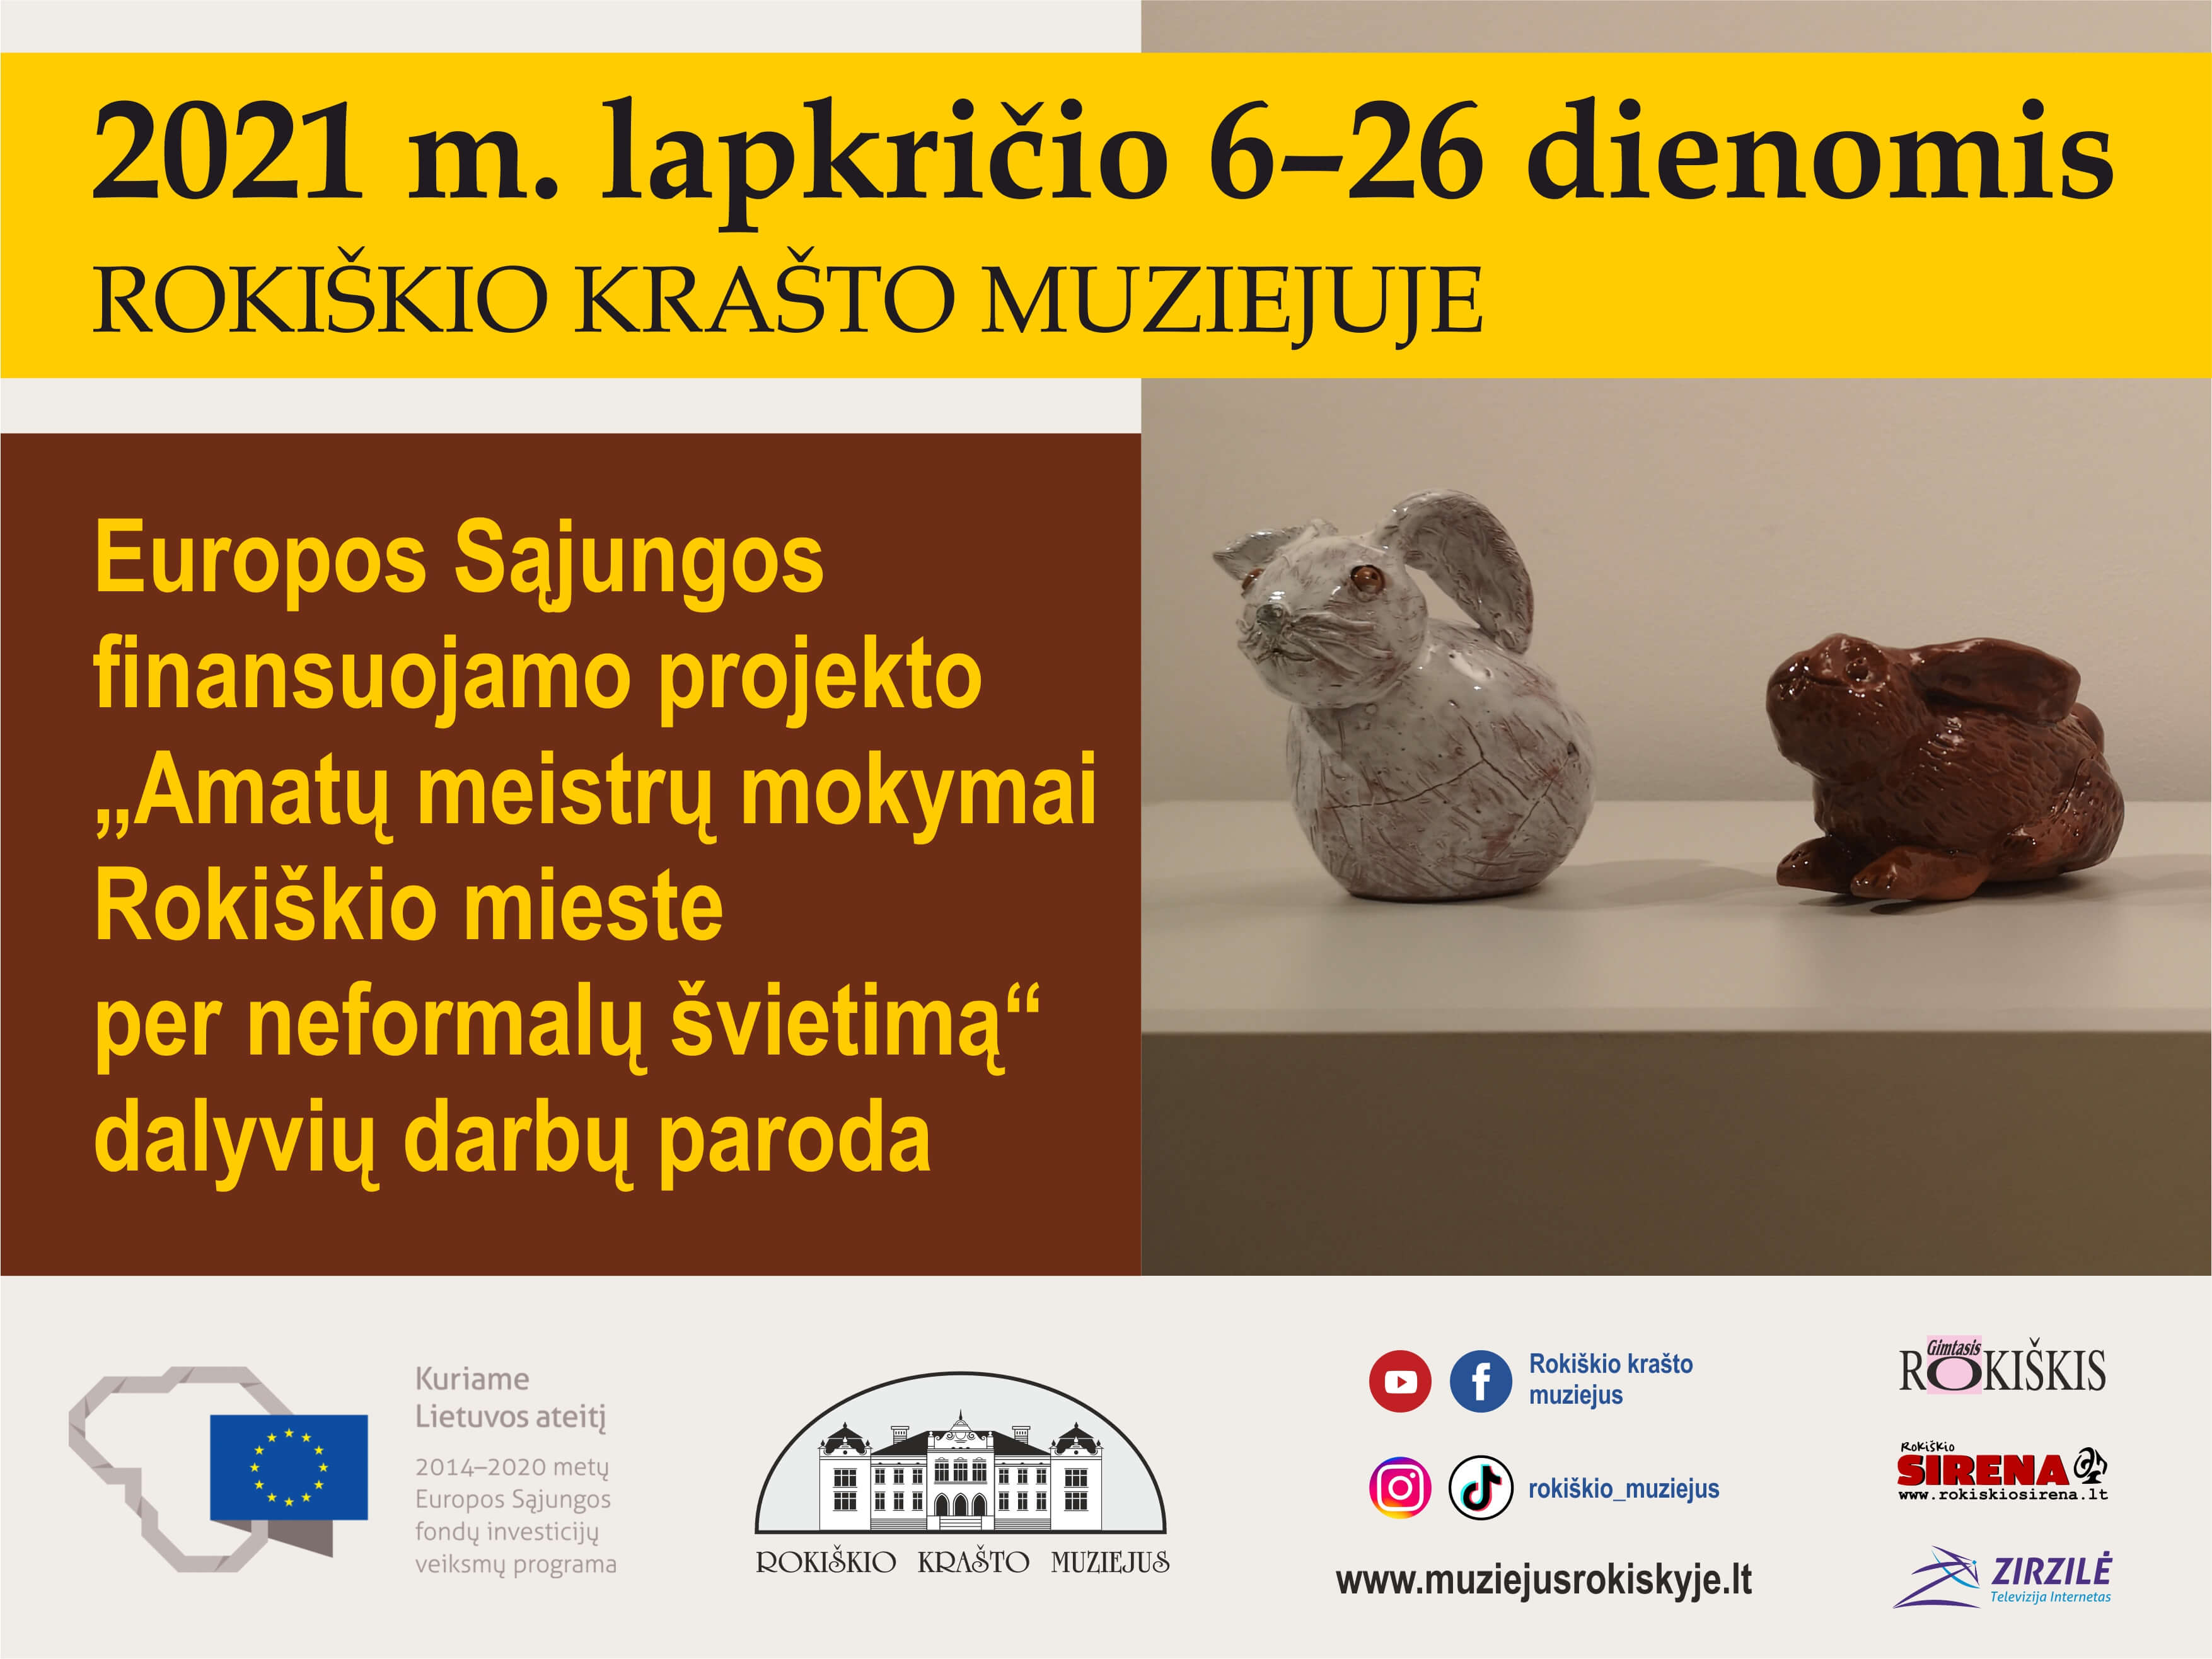 Europos Sąjungos finansuojamo projekto „Amatų meistrų mokymai Rokiškio mieste per neformalų švietimą“ dalyviai mokėsi odos dirbinių gaminimo, juostų pynimo, keramikos ir tekstilės amato.